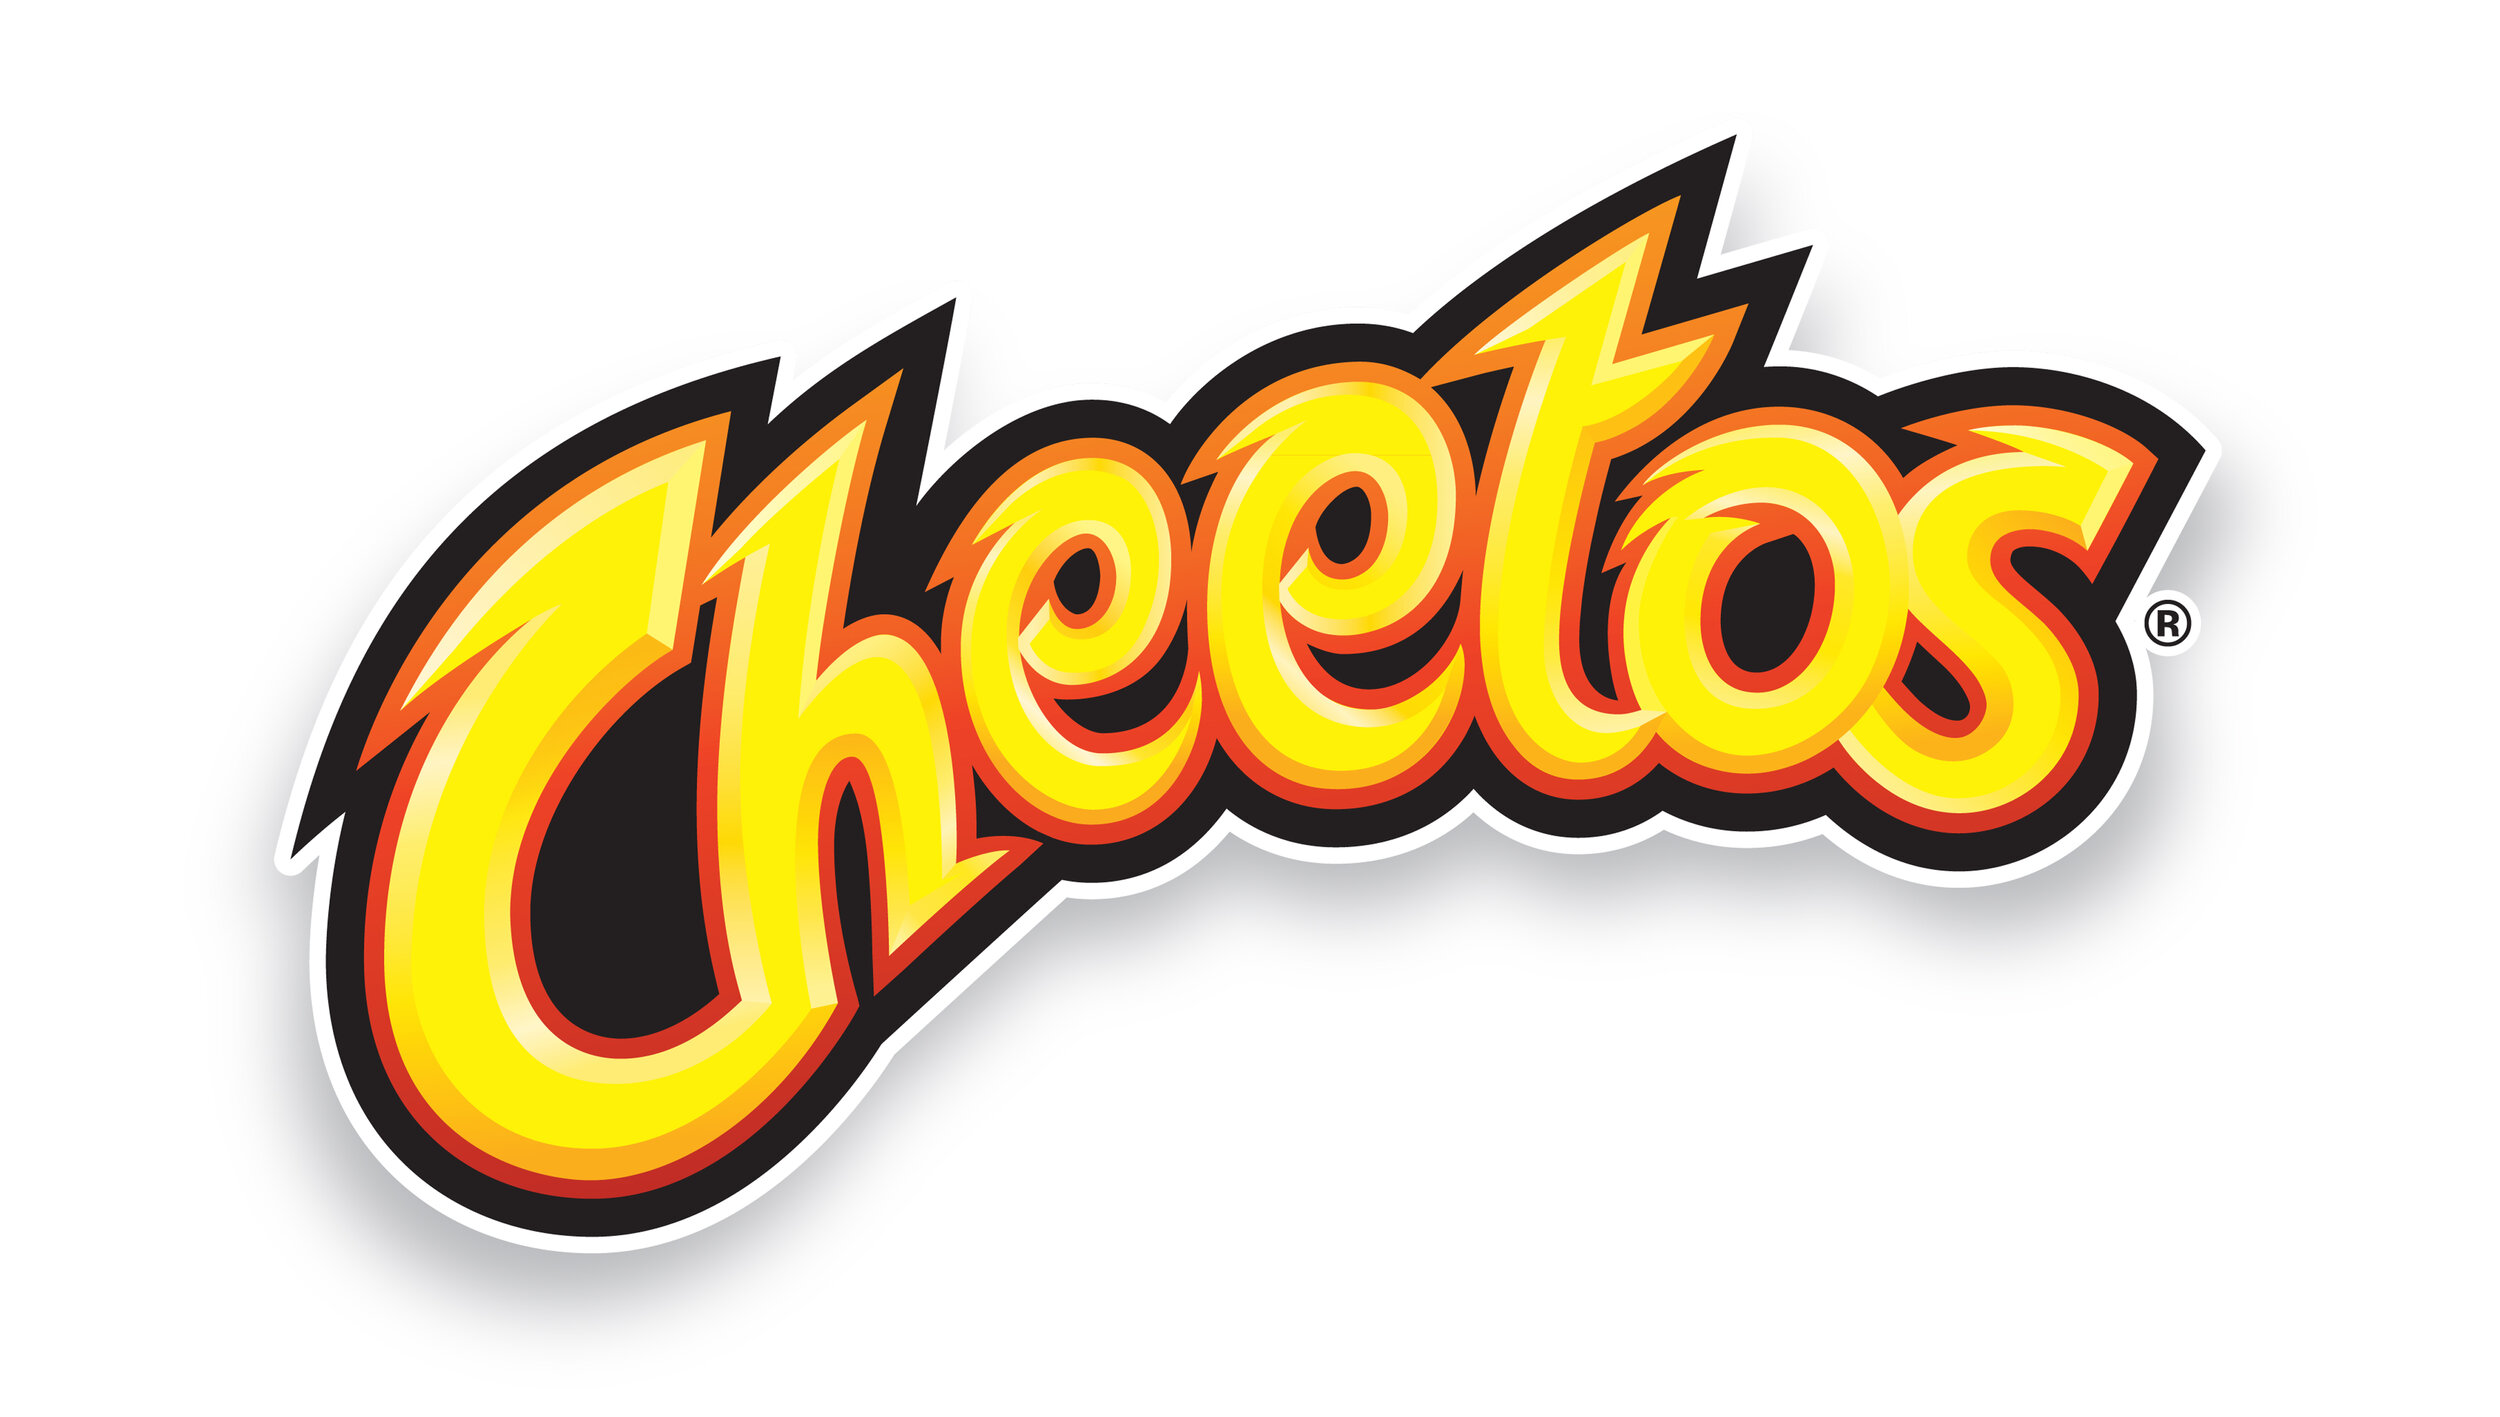 Cheetos_logo_FINAL.jpg